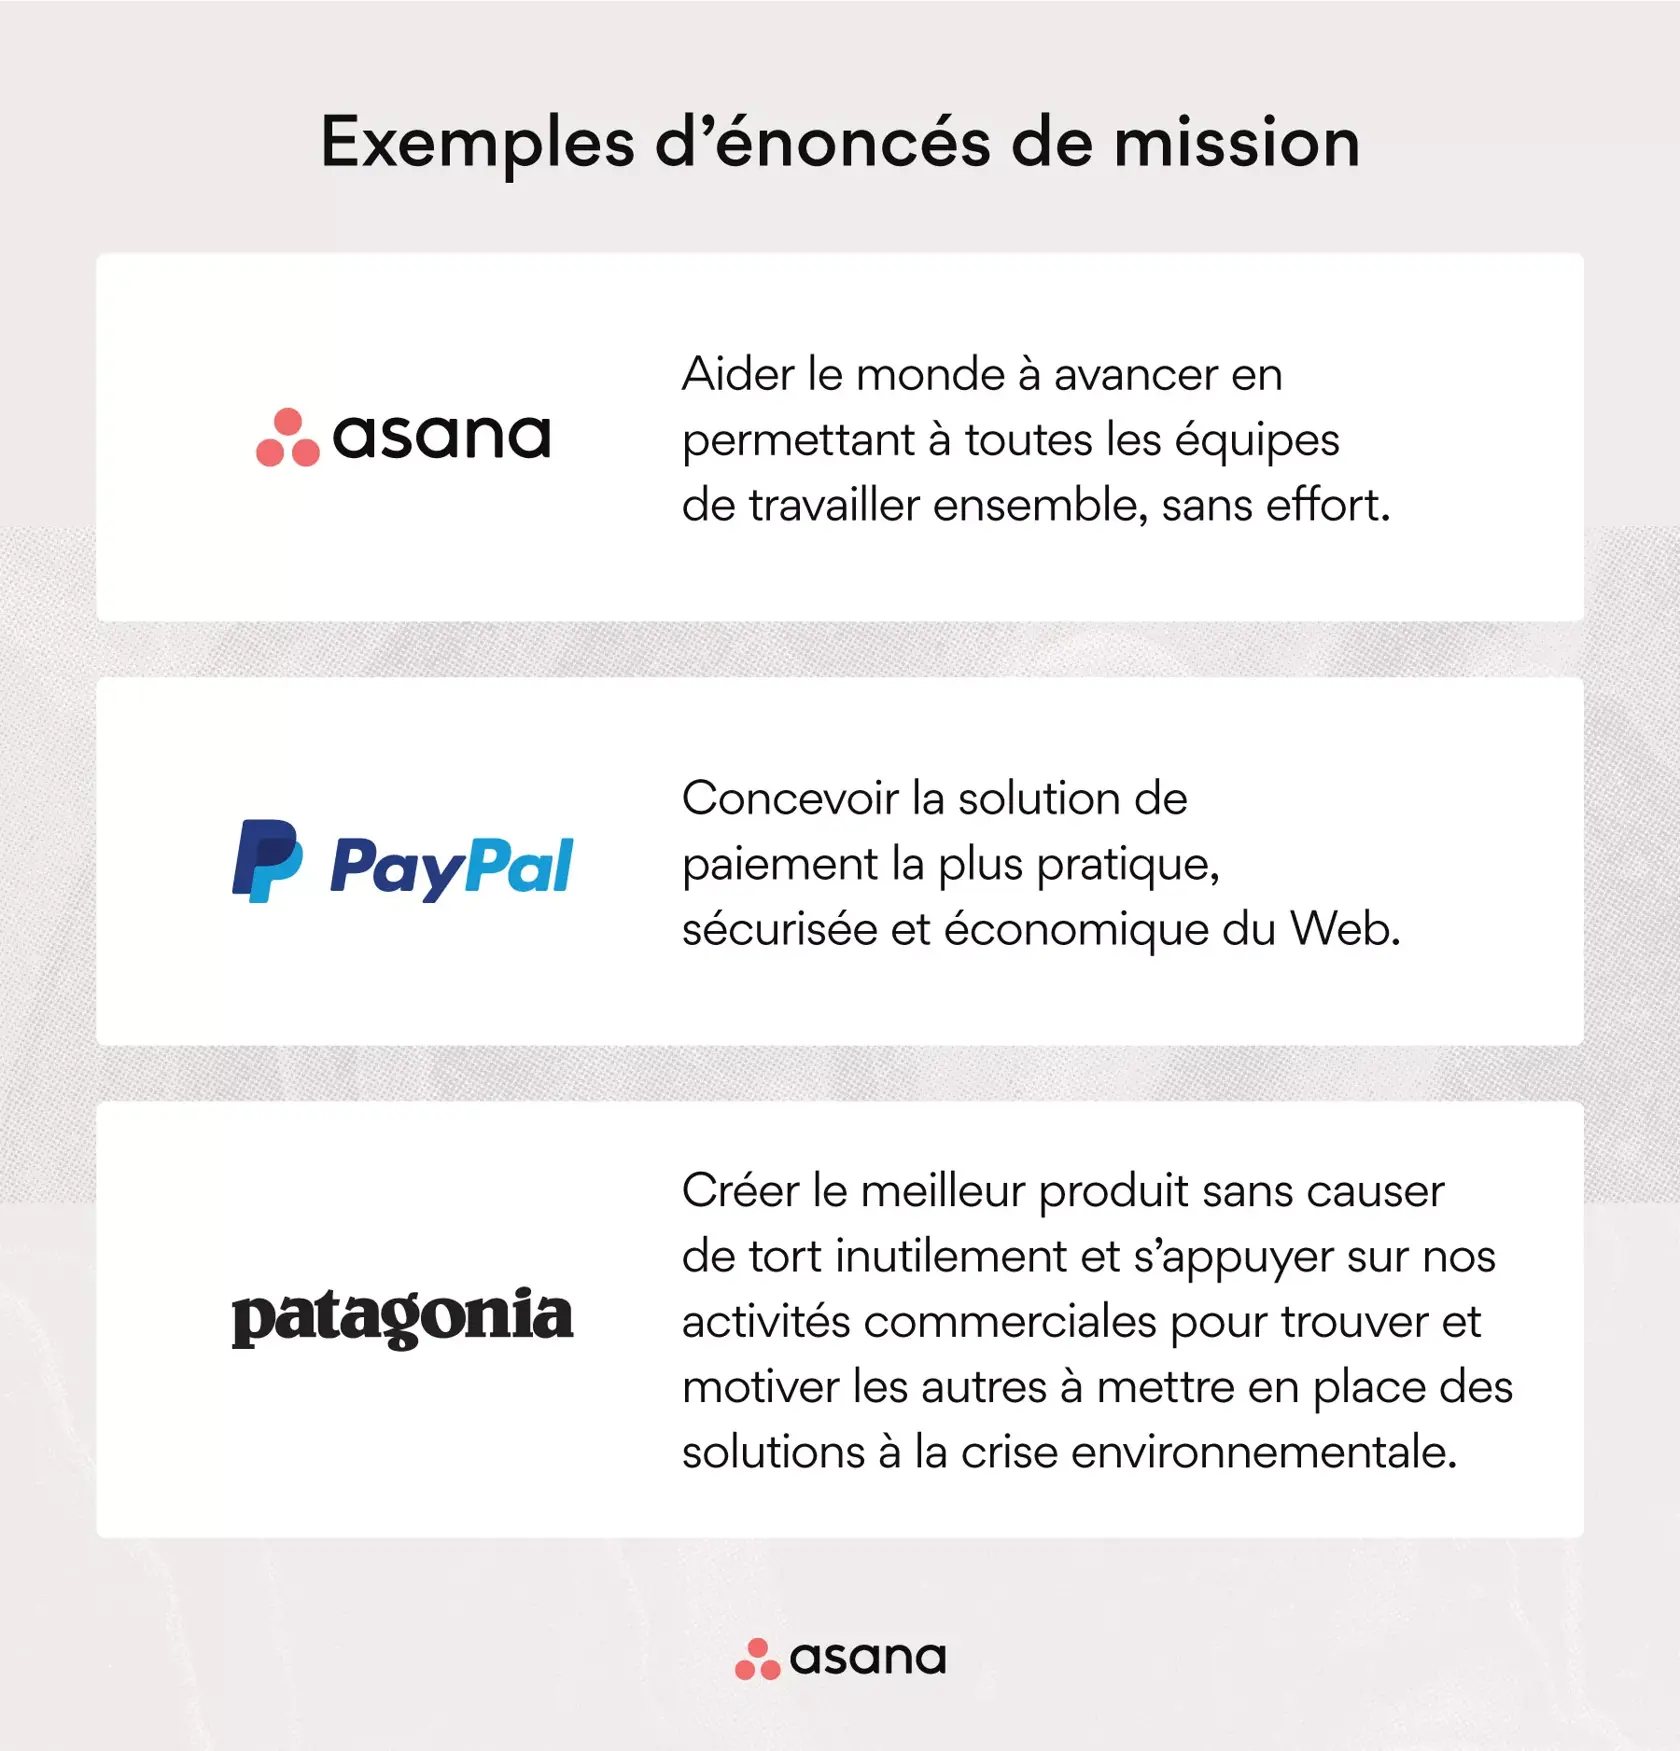 [Illustration intégrée] Exemples d’énoncés de mission : Asana, PayPal, Patagonia (exemple)